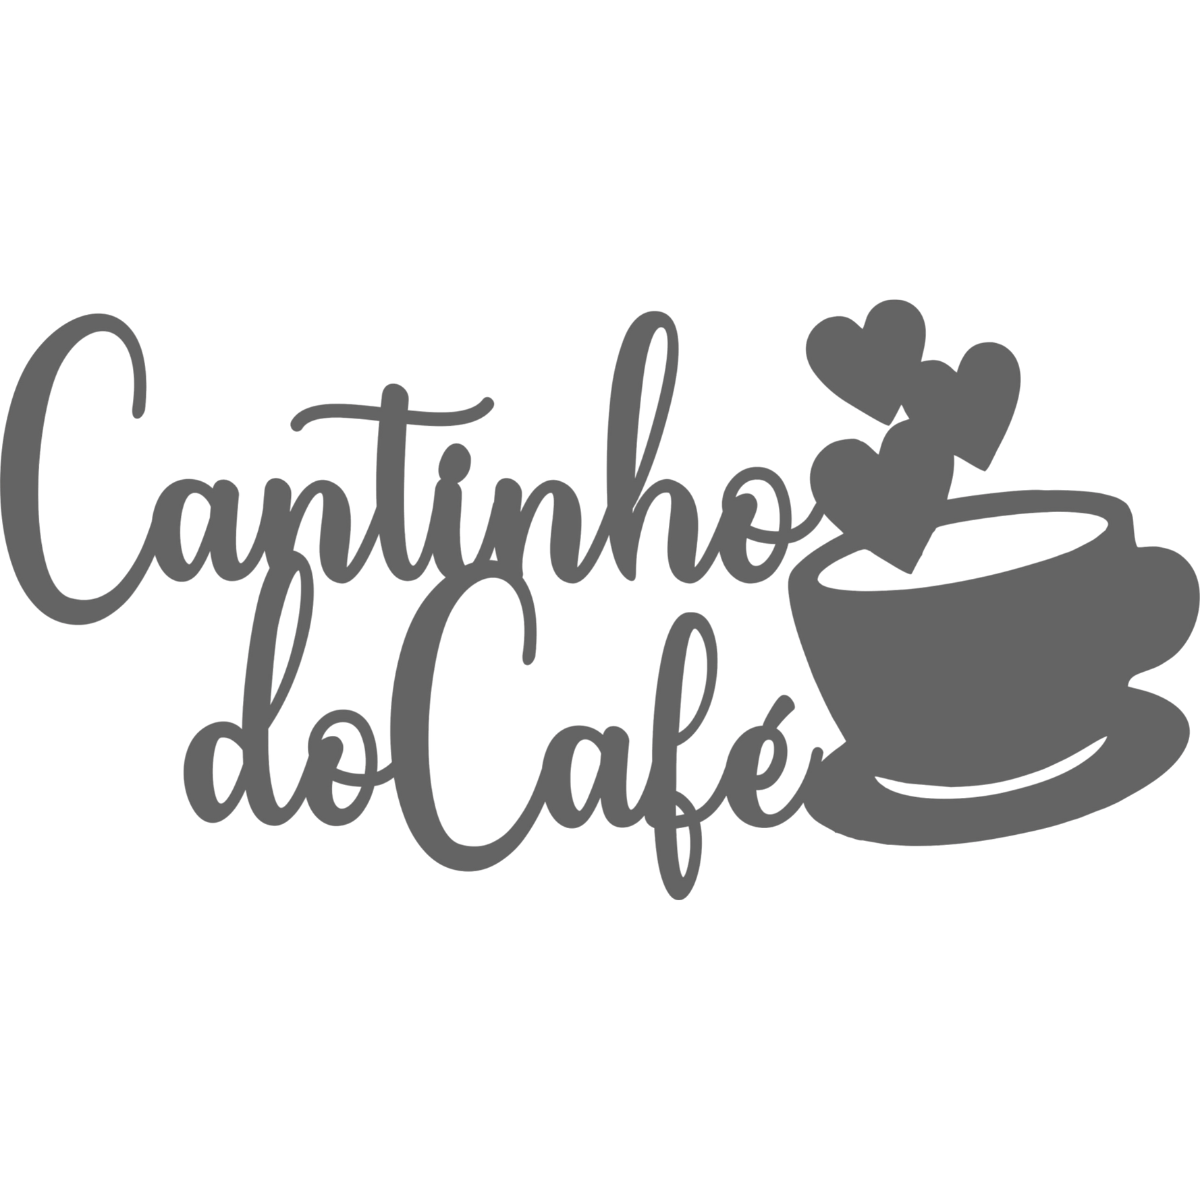 Cantinho do Cafe - Xícara - Decorativo - MDF - Preto - Quadro Frase Letreiro - 58x30cm